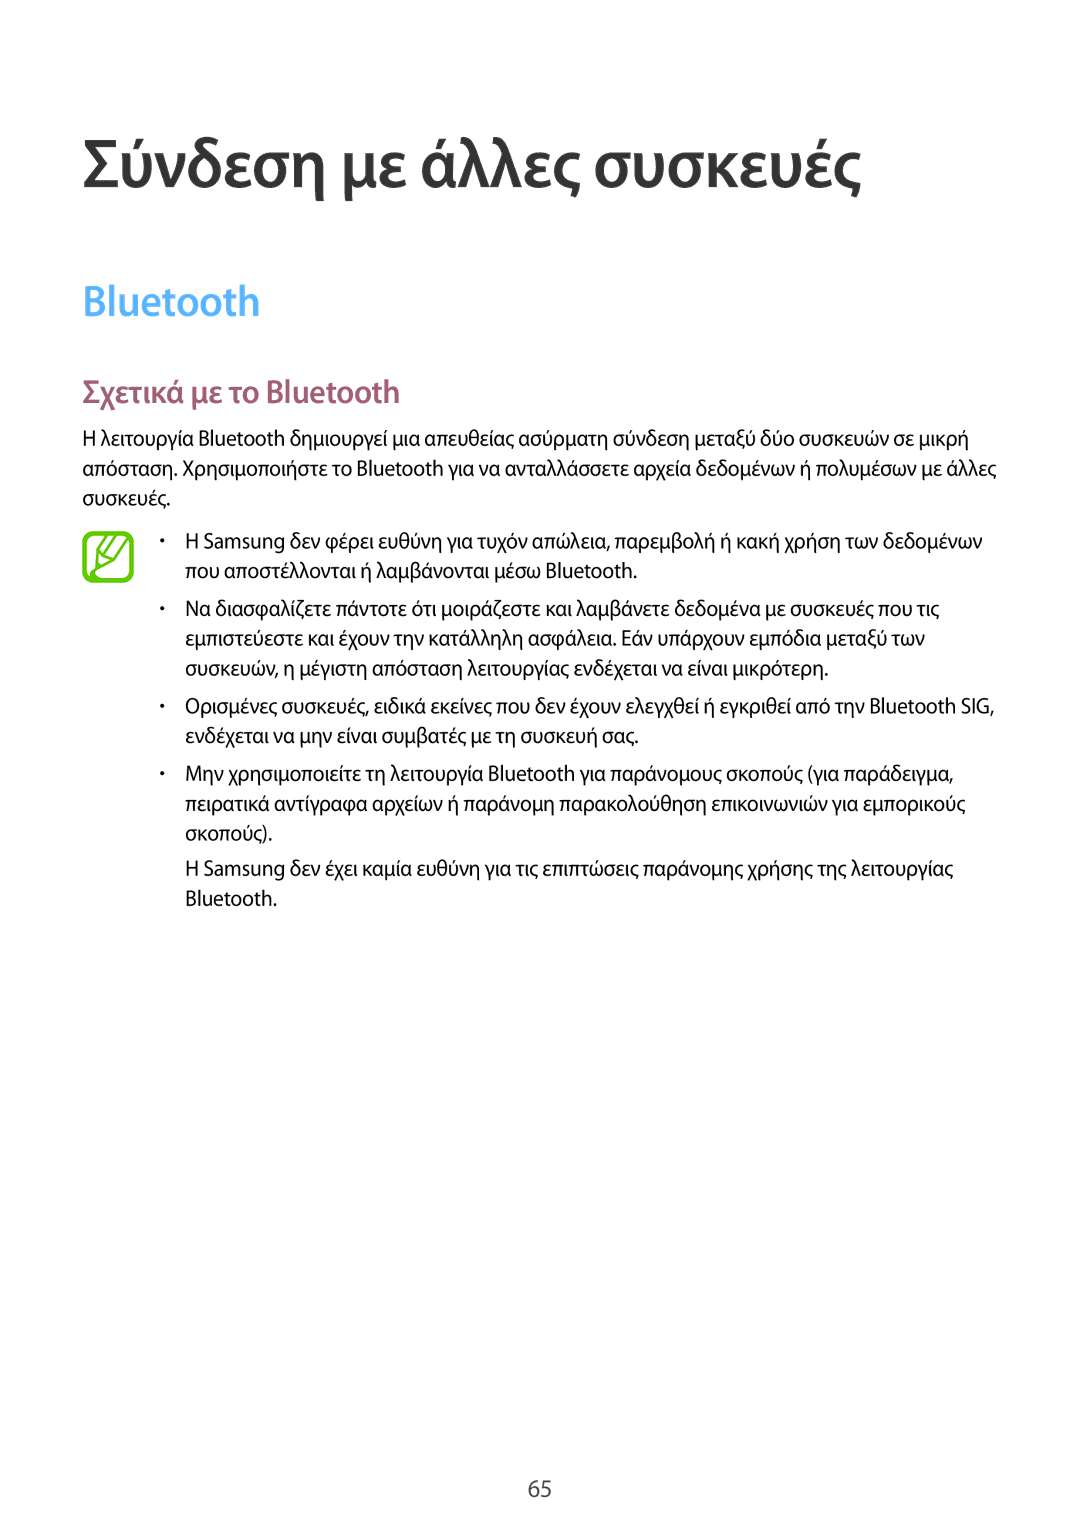 Samsung SM-T561NZKAEUR, SM-T561NZWAEUR manual Σύνδεση με άλλες συσκευές, Σχετικά με το Bluetooth 